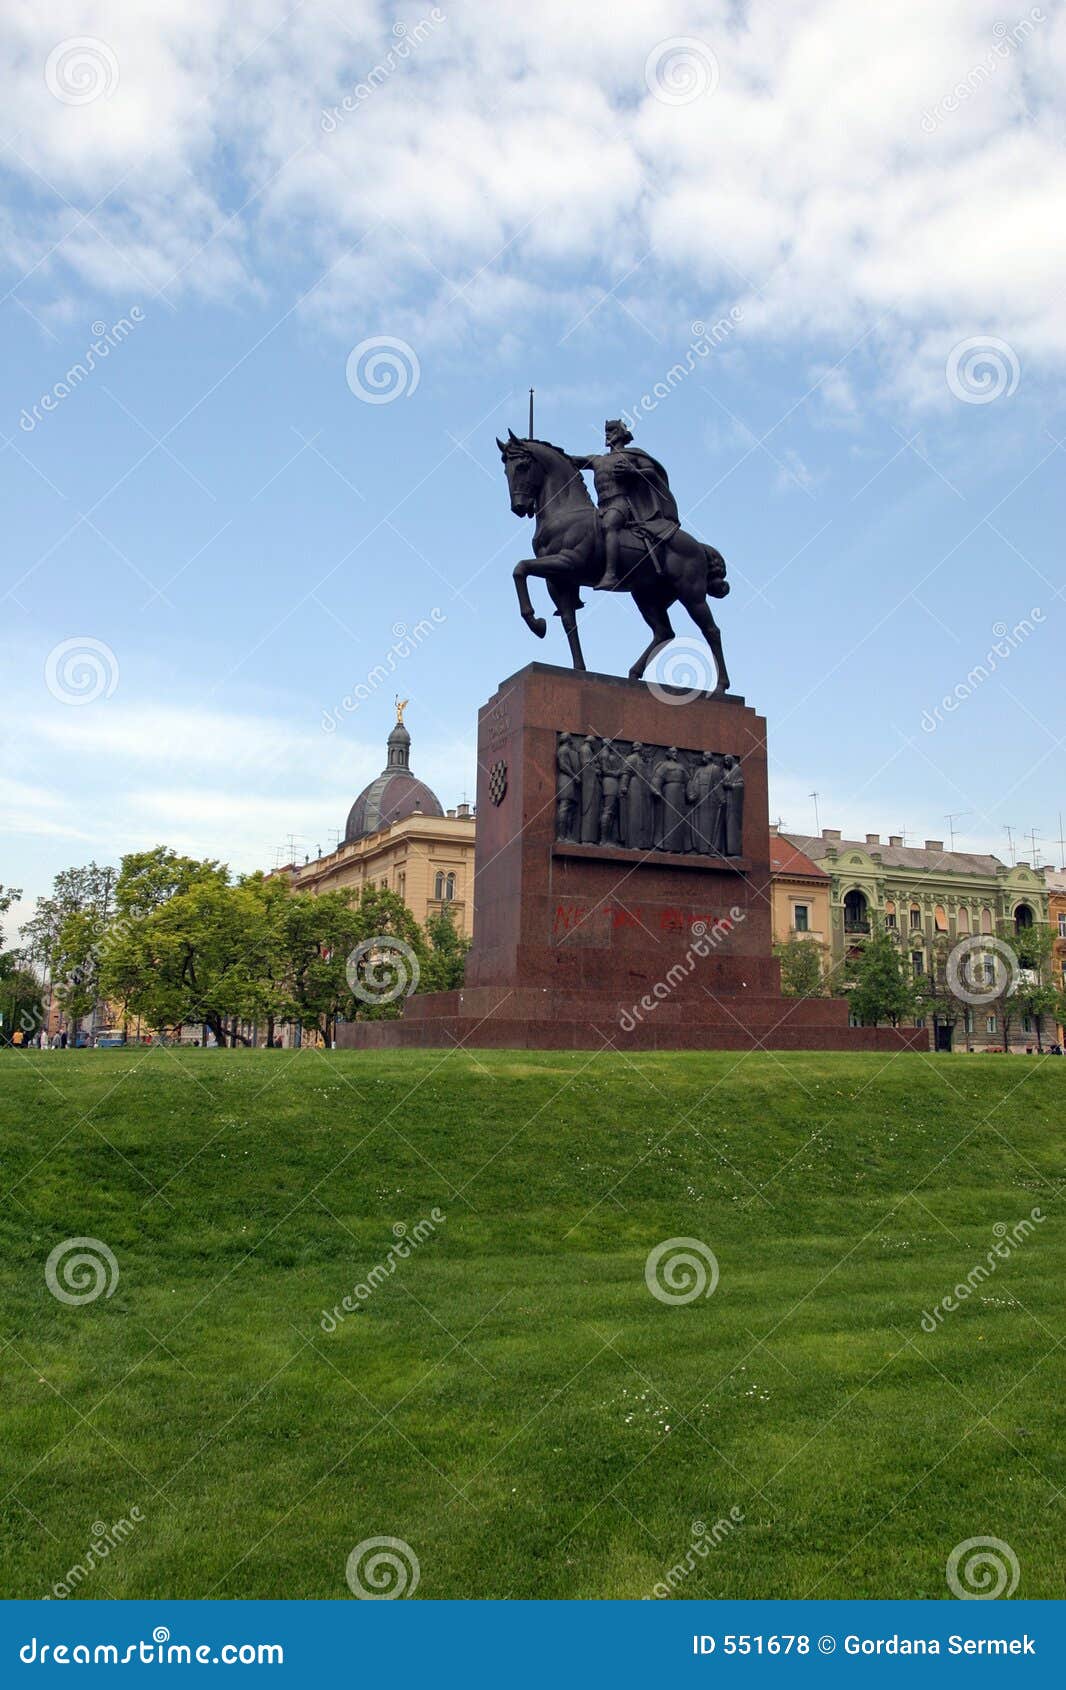 statue of king tomislav in city park in zagreb